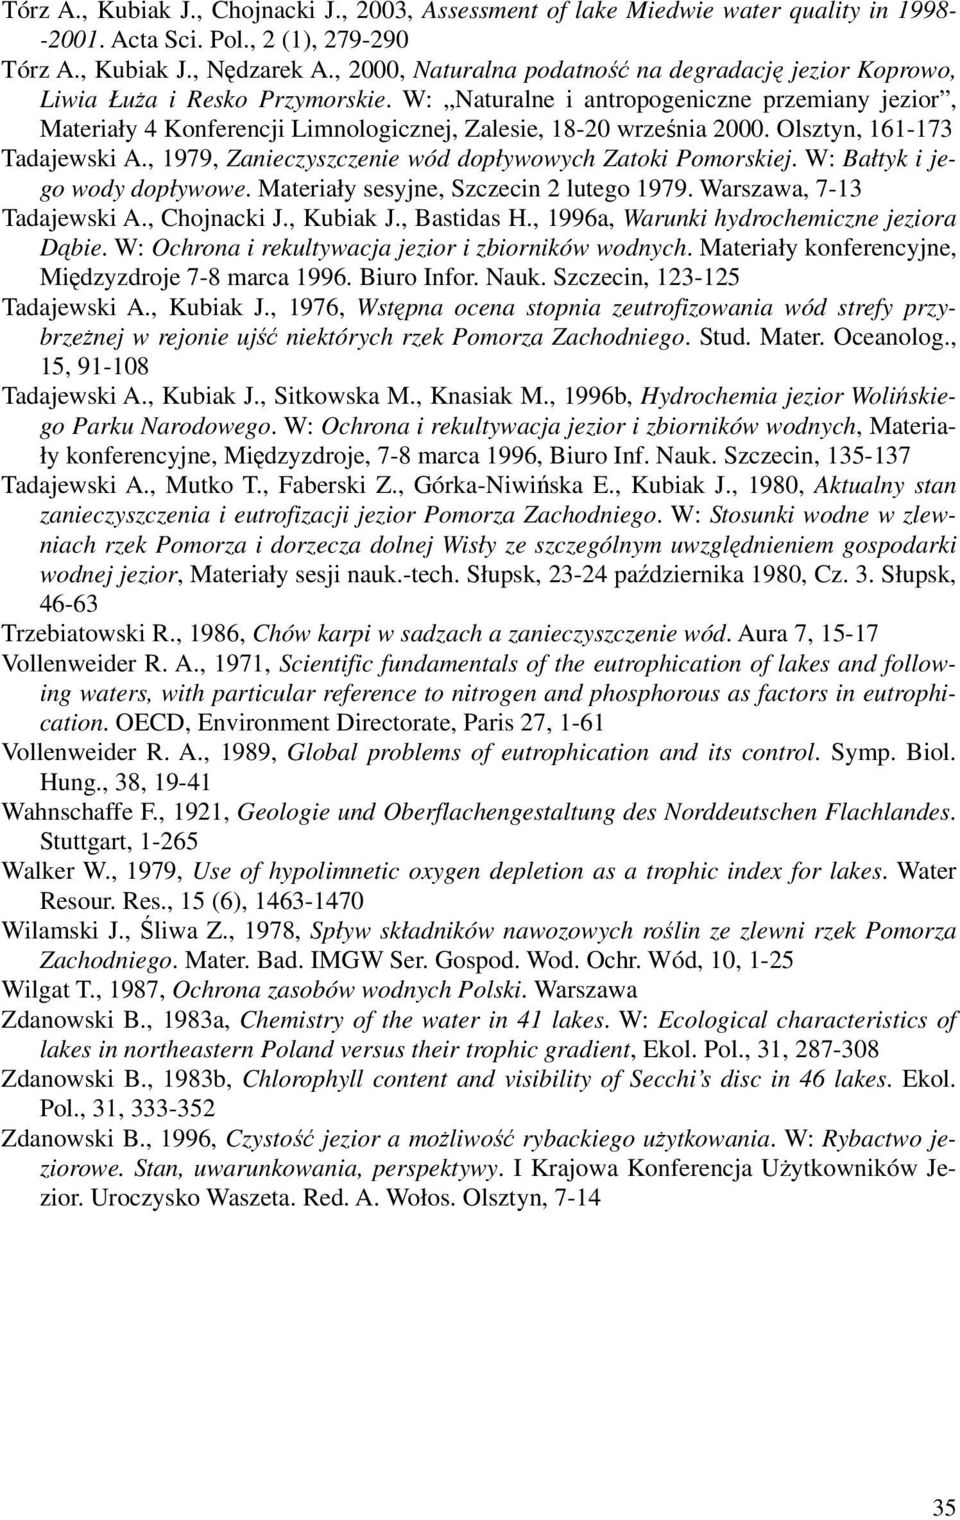 W: Naturalne i antropogeniczne przemiany jezior, Materiały 4 Konferencji Limnologicznej, Zalesie, 18-20 września 2000. Olsztyn, 161-173 Tadajewski A.